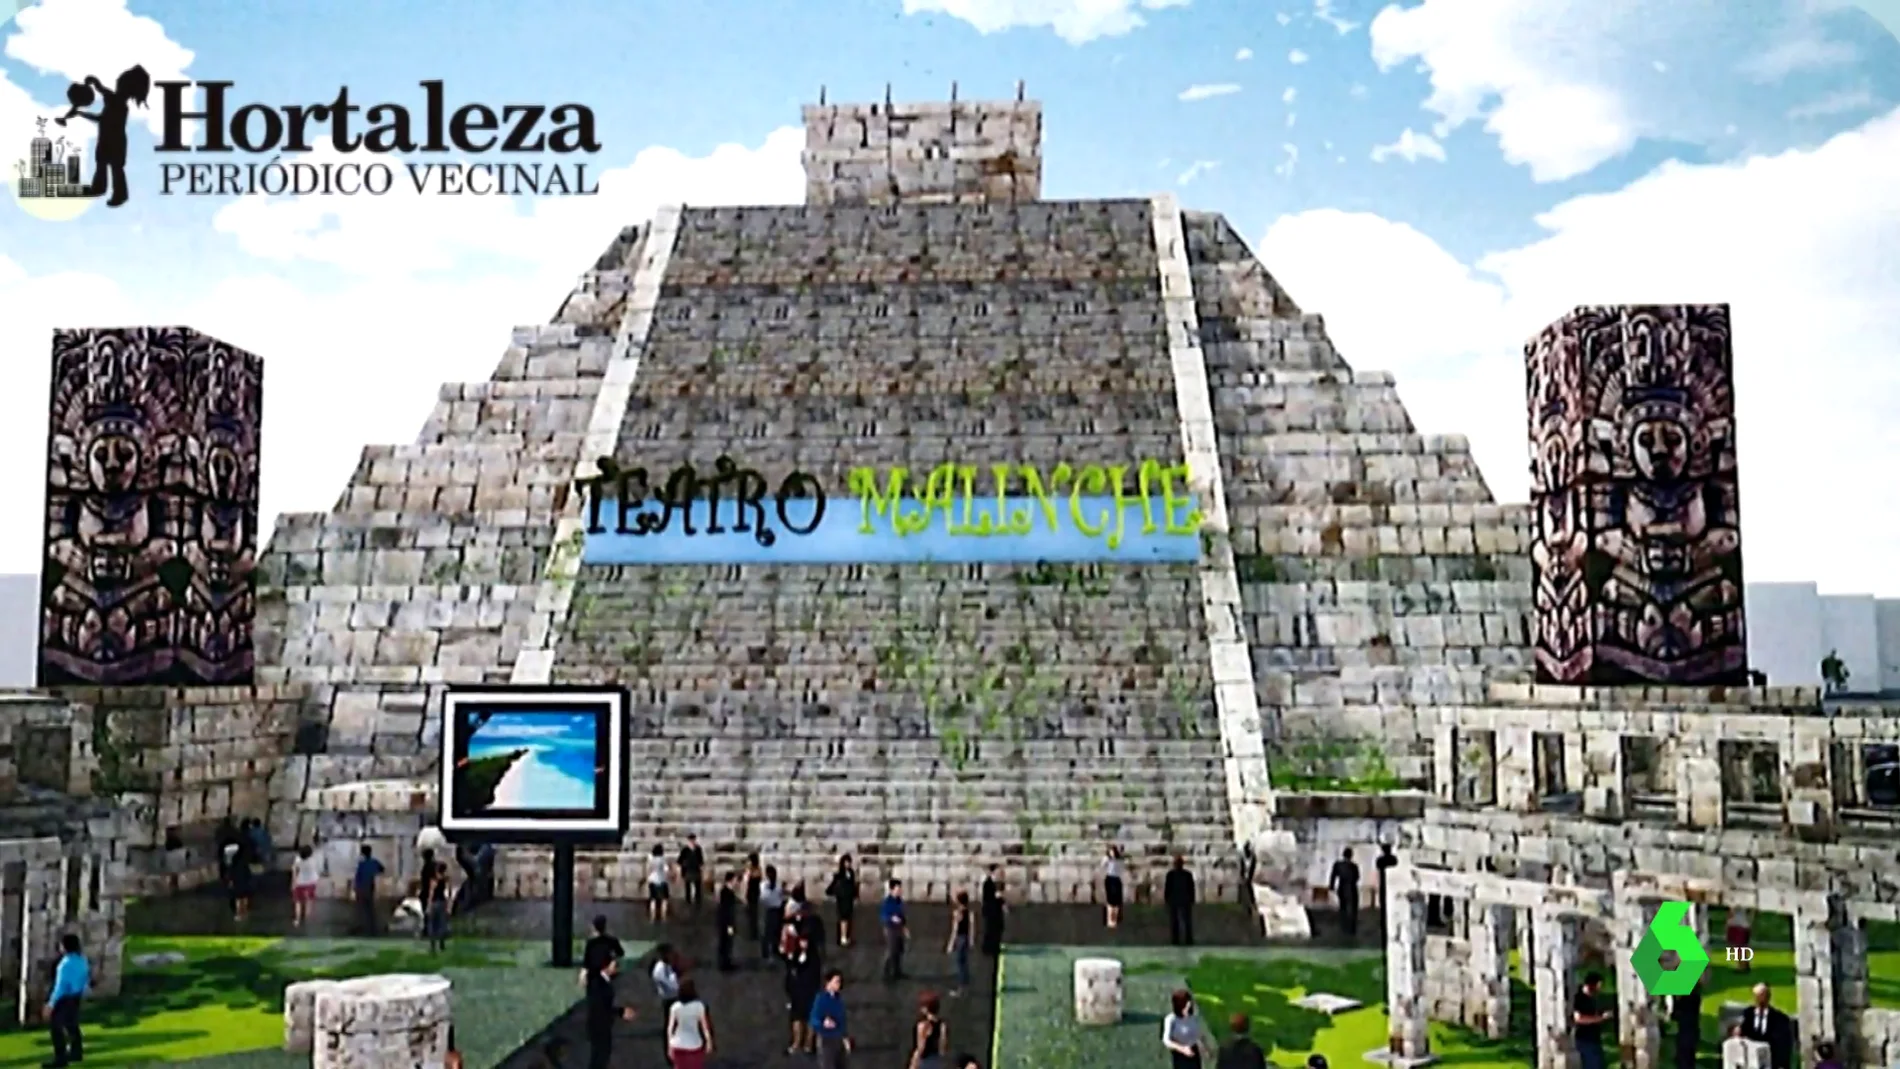 Nacho Cano prevé construir una pirámide de 30 metros en el barrio madrileño de Hortaleza